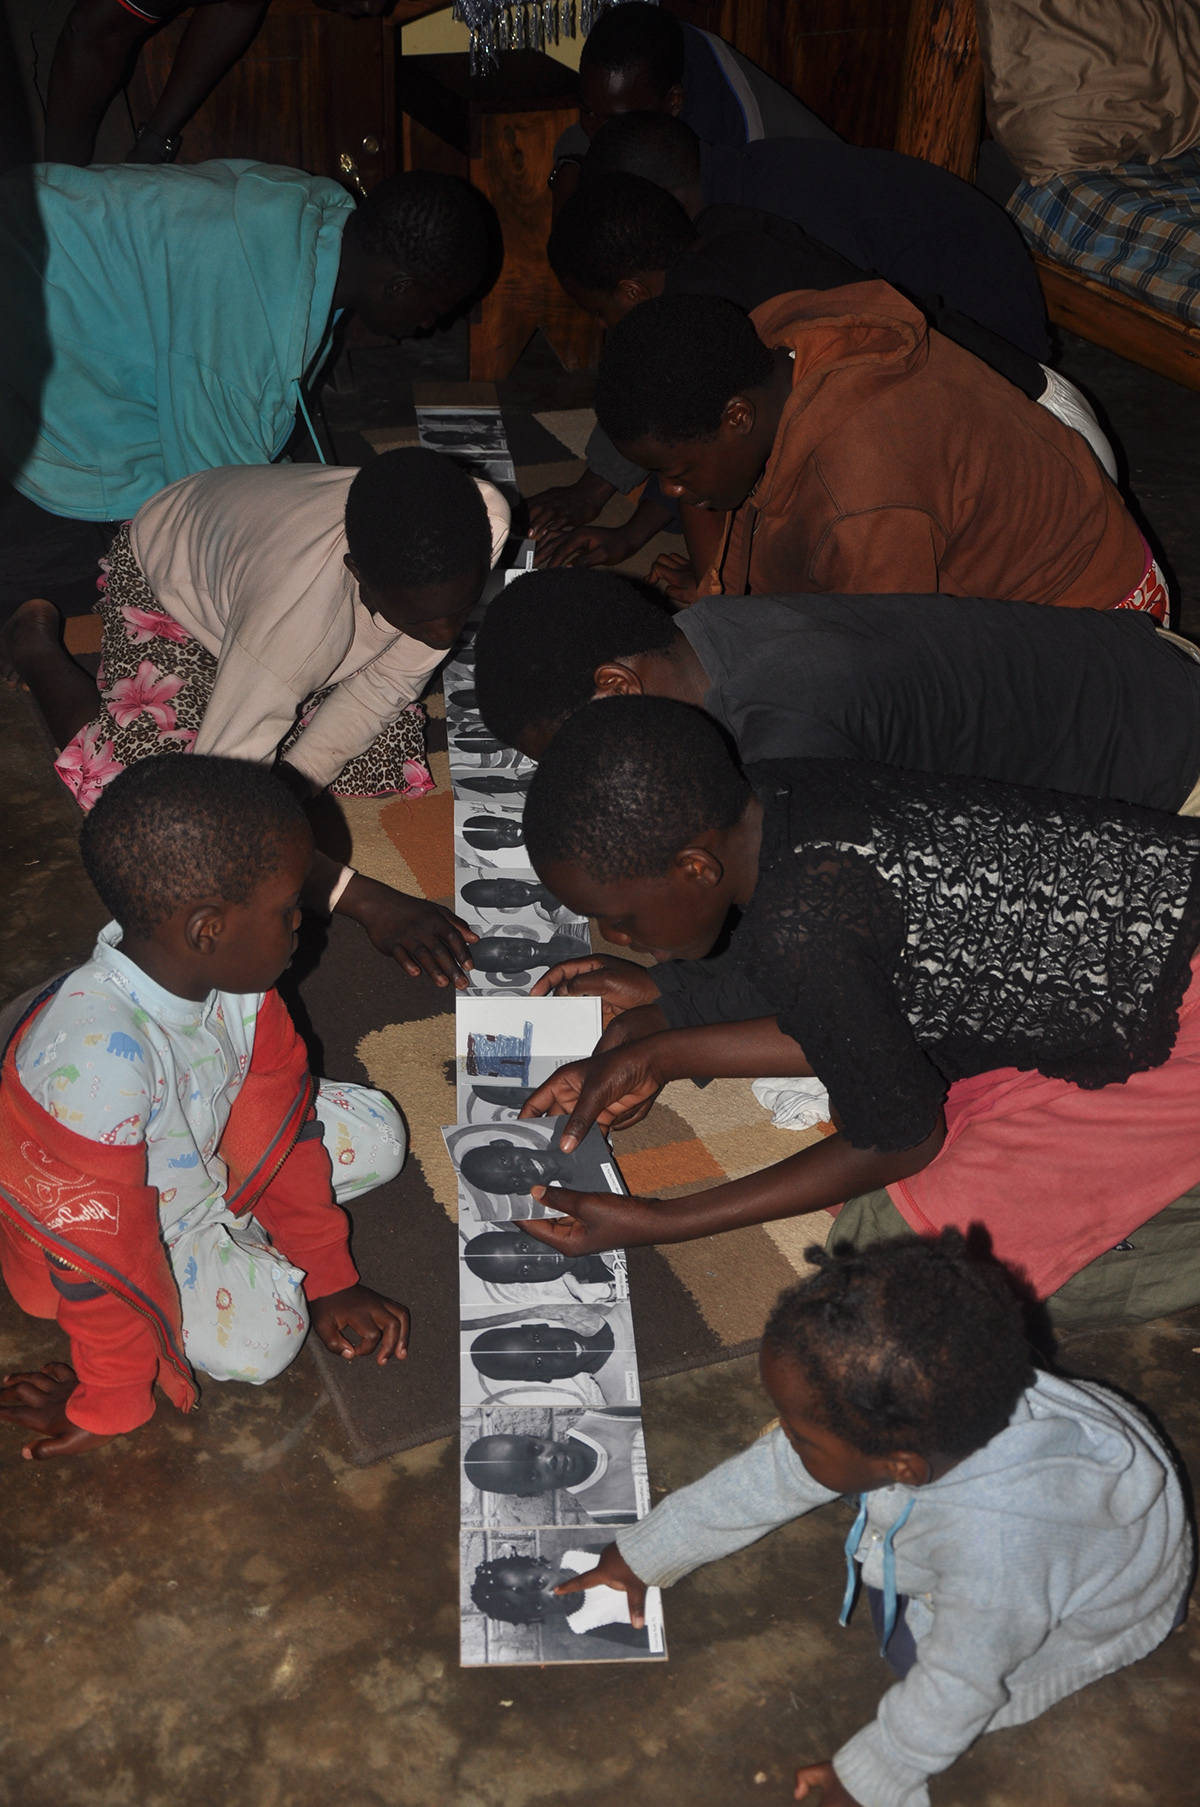 Uganda Bookbinding accordian children grown up dreams Hopes essubi arts new hope